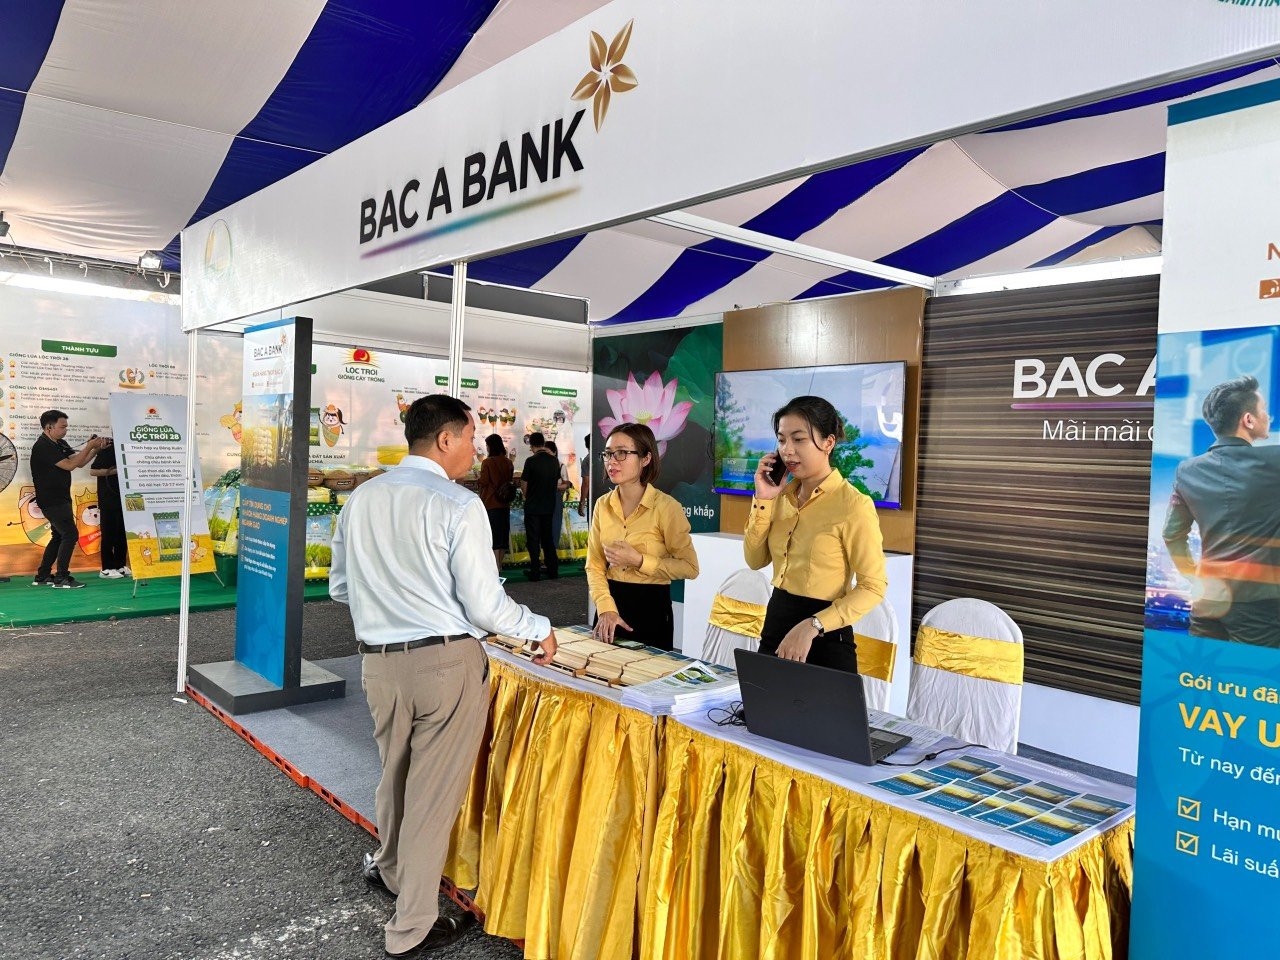 (CĐ BÙI HẠ) BAC A BANK tham gia Festival quốc tế ngành hàng lúa gạo Việt Nam - Hậu Giang năm 2023 1